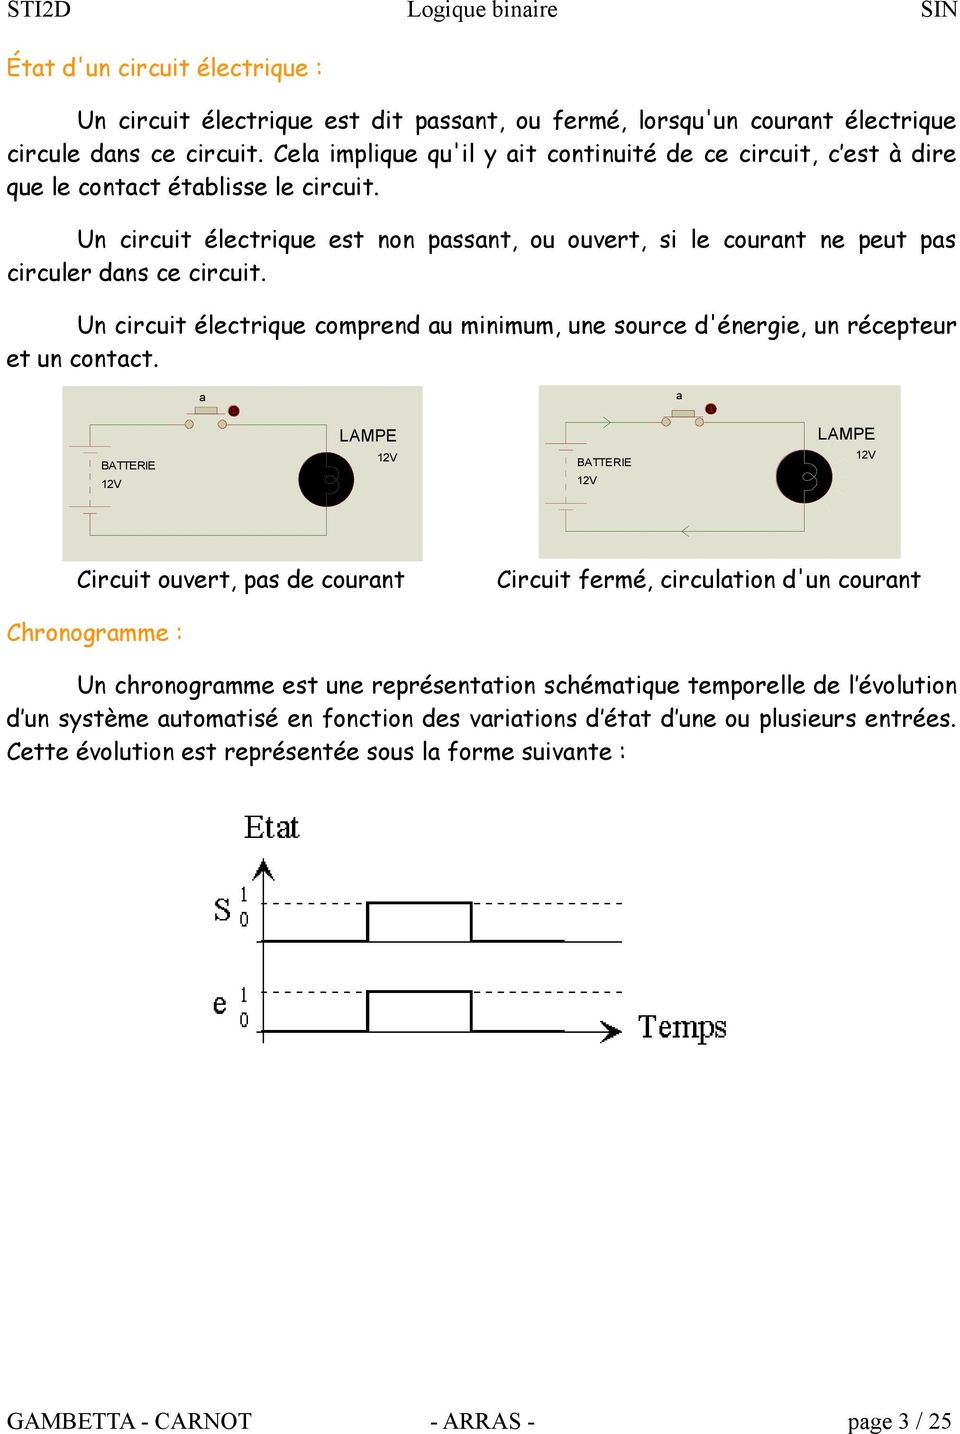 Un circuit électrique comprend u minimum, une source d'énergie, un récepteur et un contct.